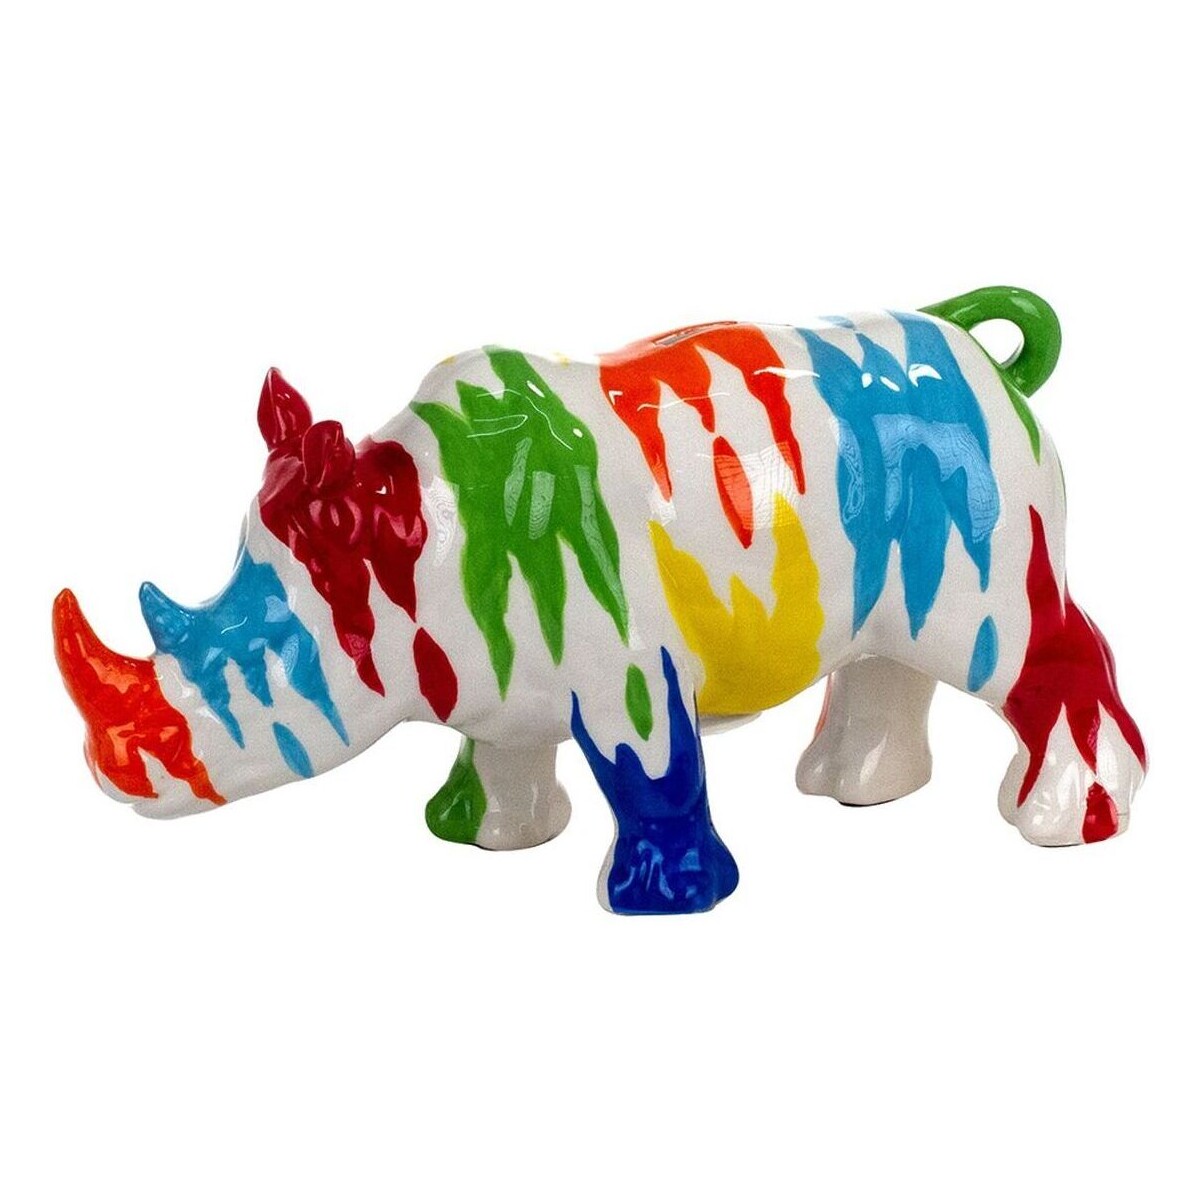 Voir toutes les ventes privées Voir les C.G.V Signes Grimalt Tirelire Rhinocéros Multicolore Multicolore